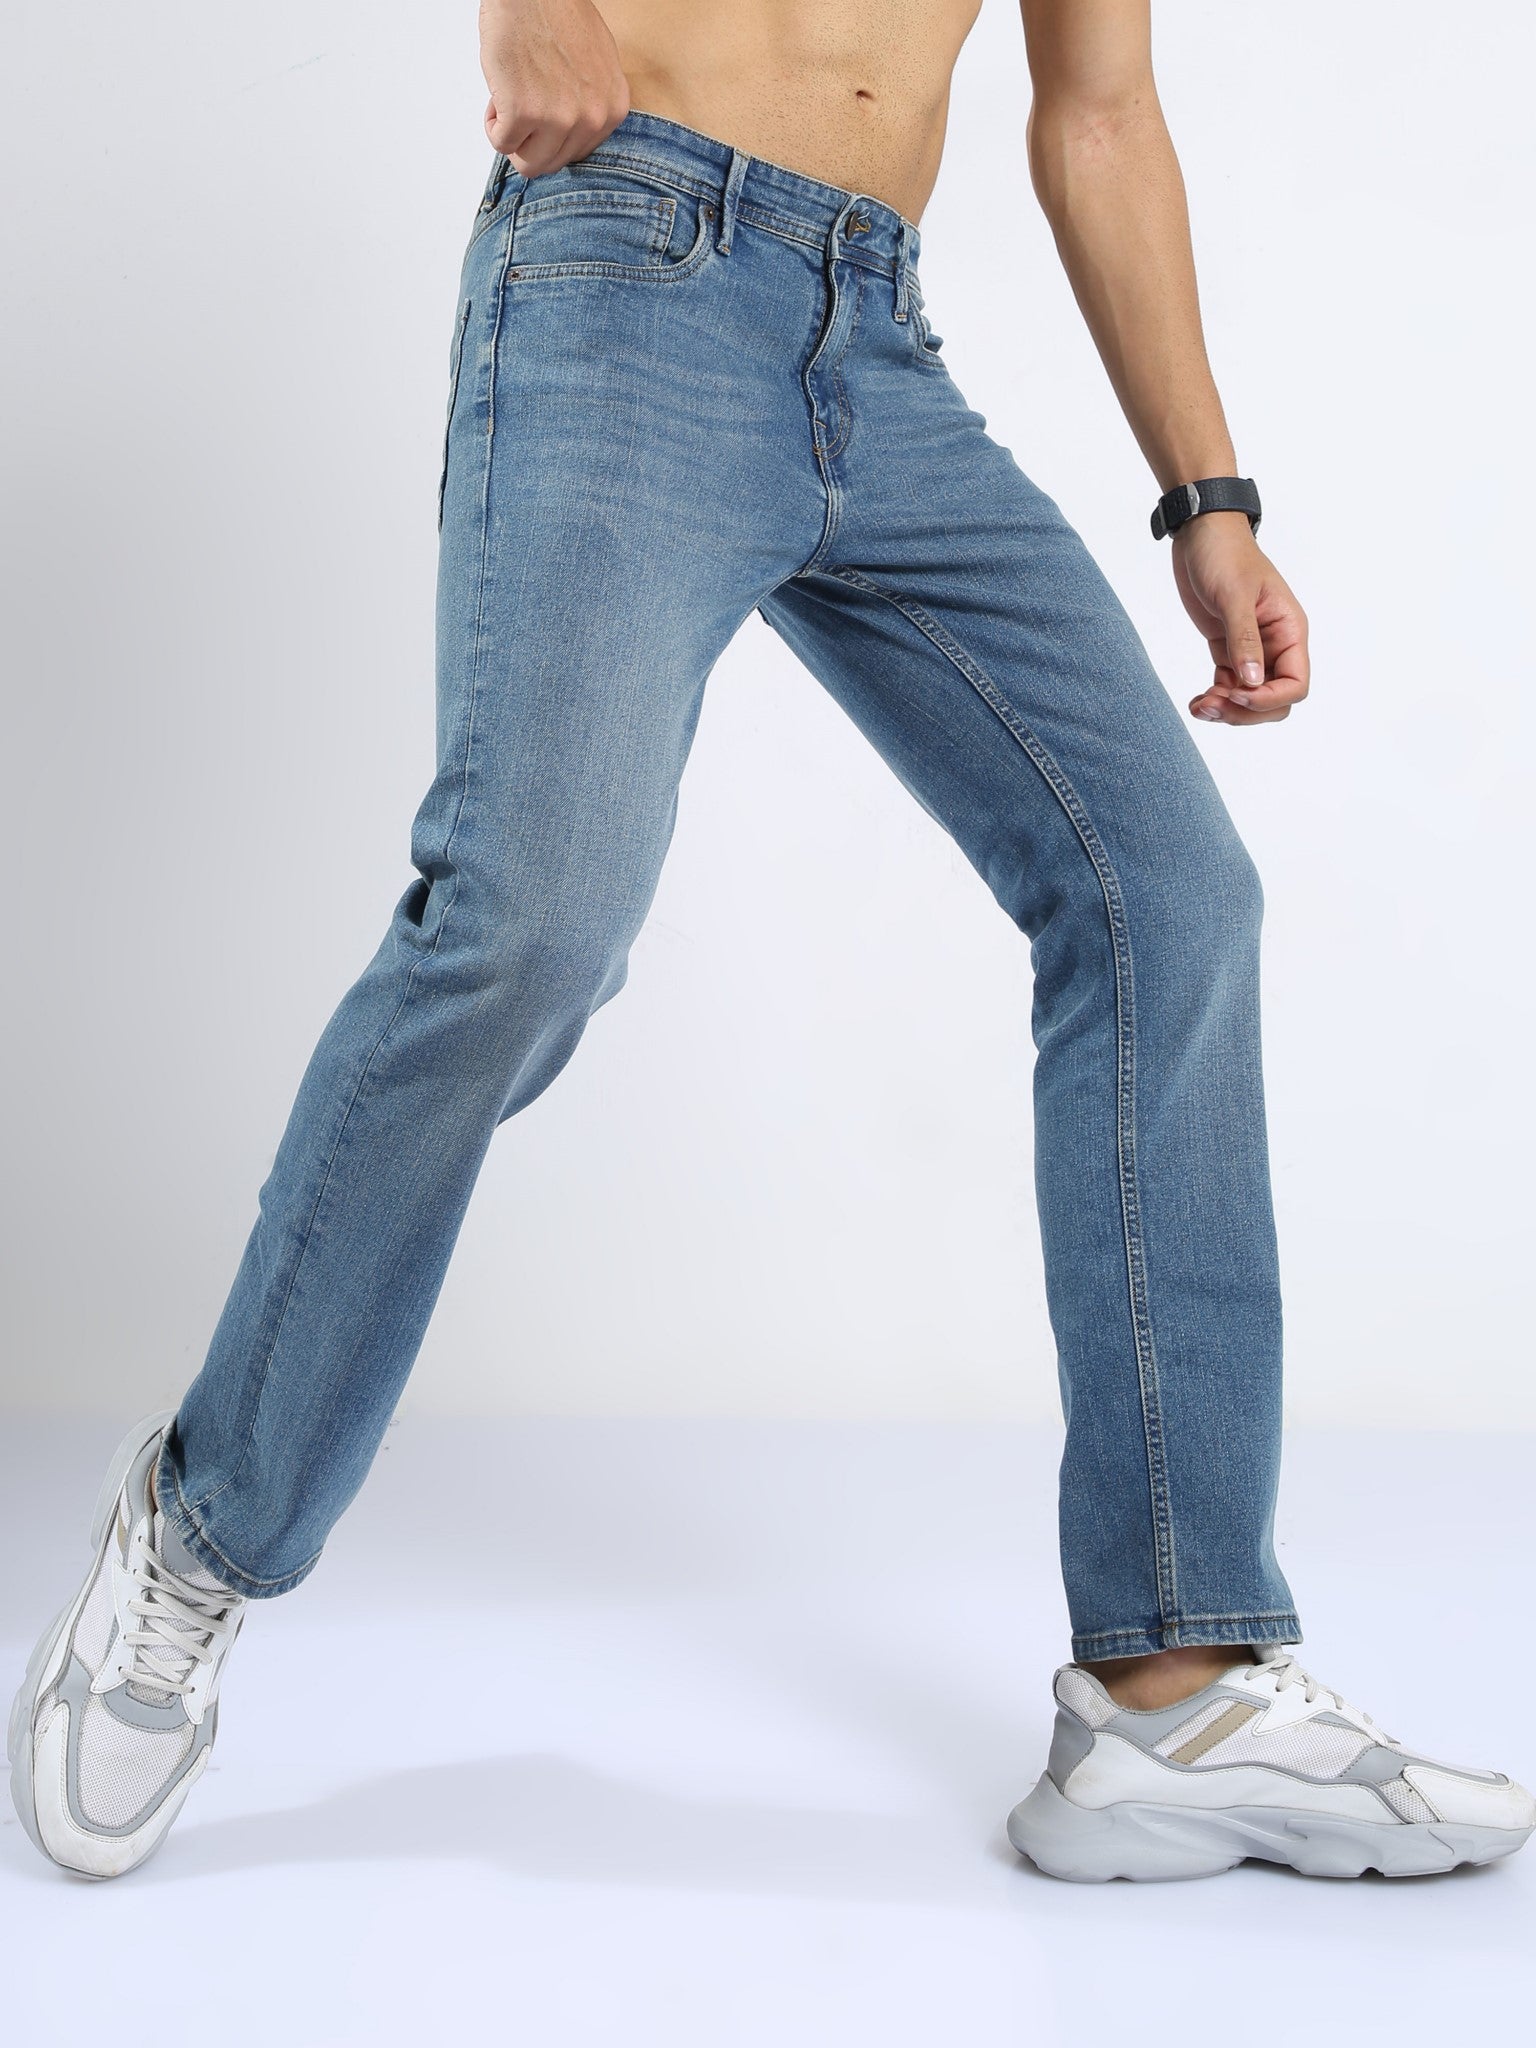 Xander Desert Blue Loose Jeans for Men